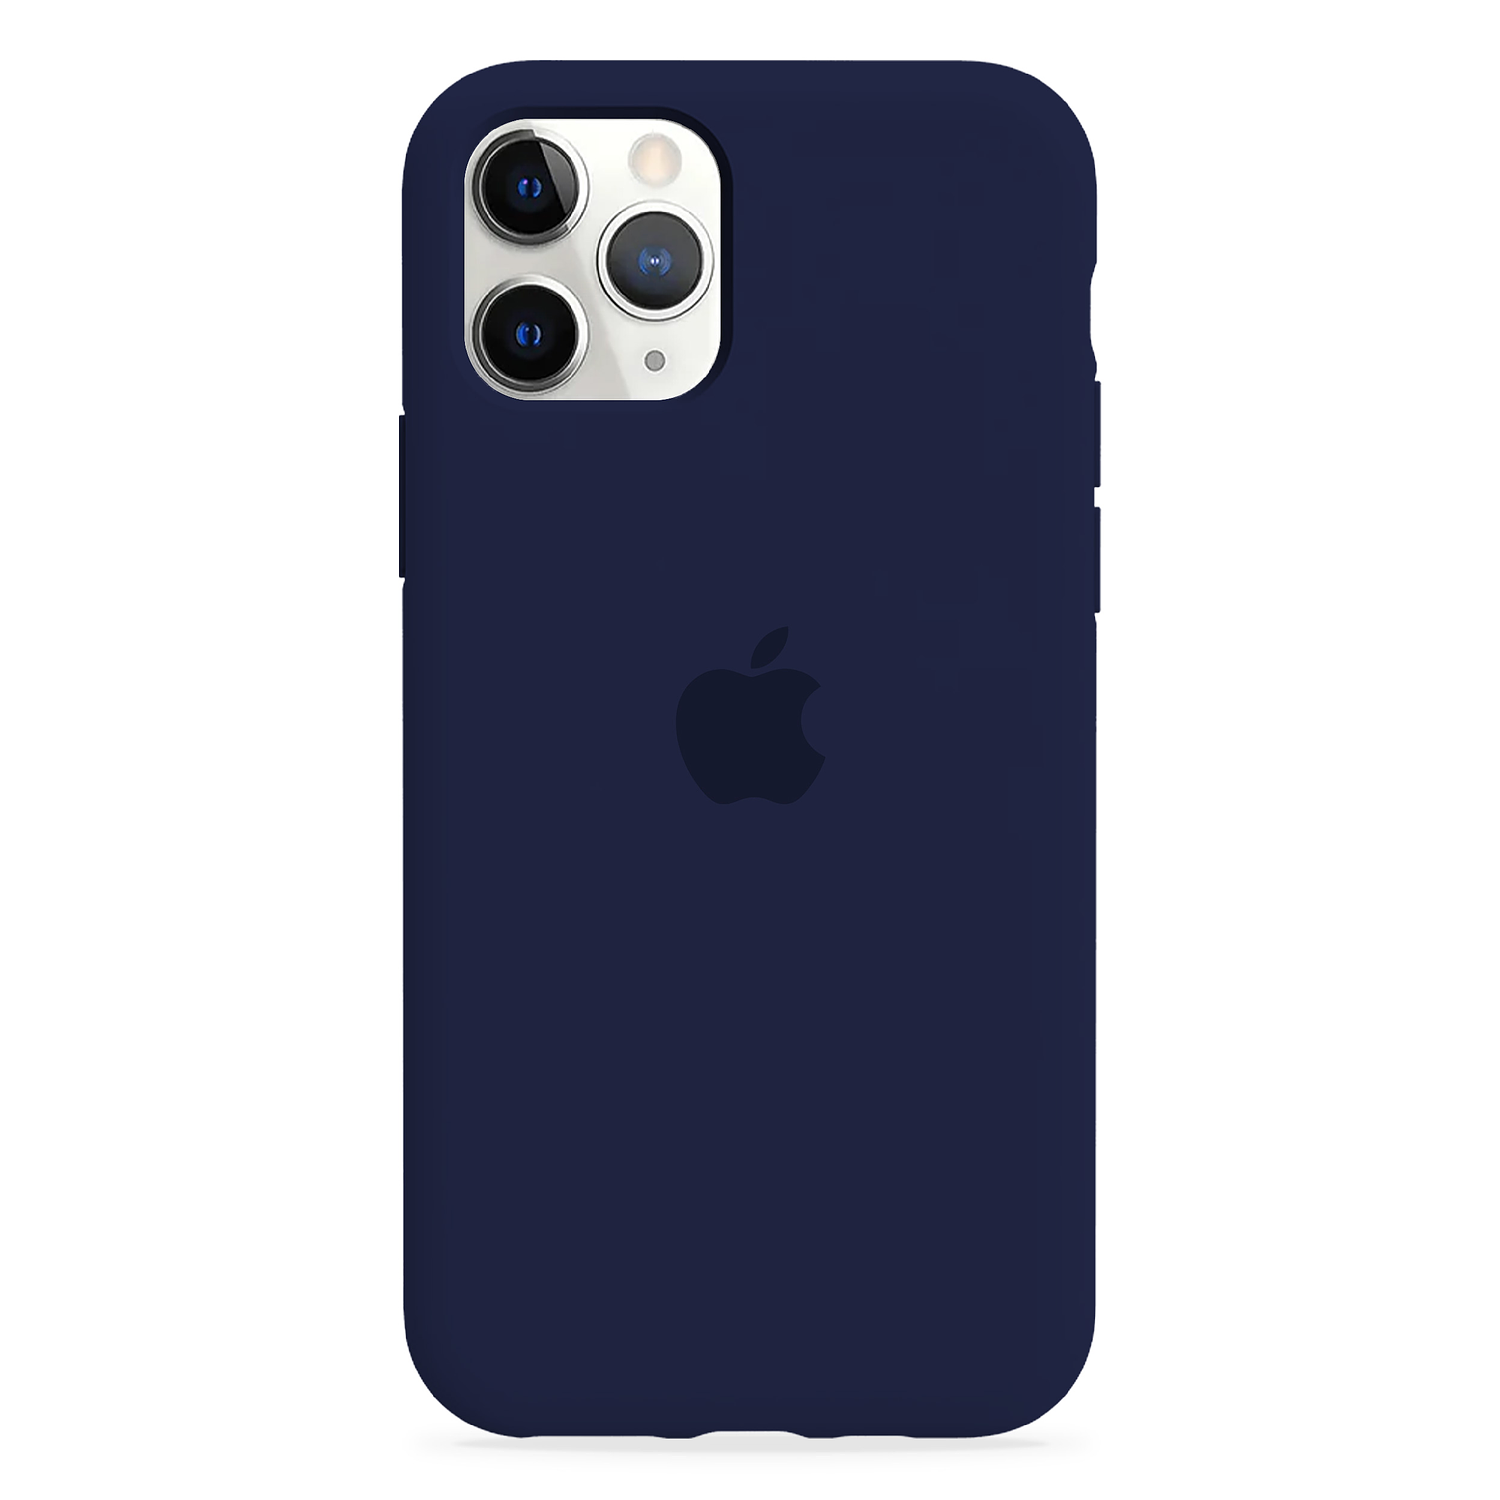 Carcasa de Silicona - iPhone 11 Pro Max 13